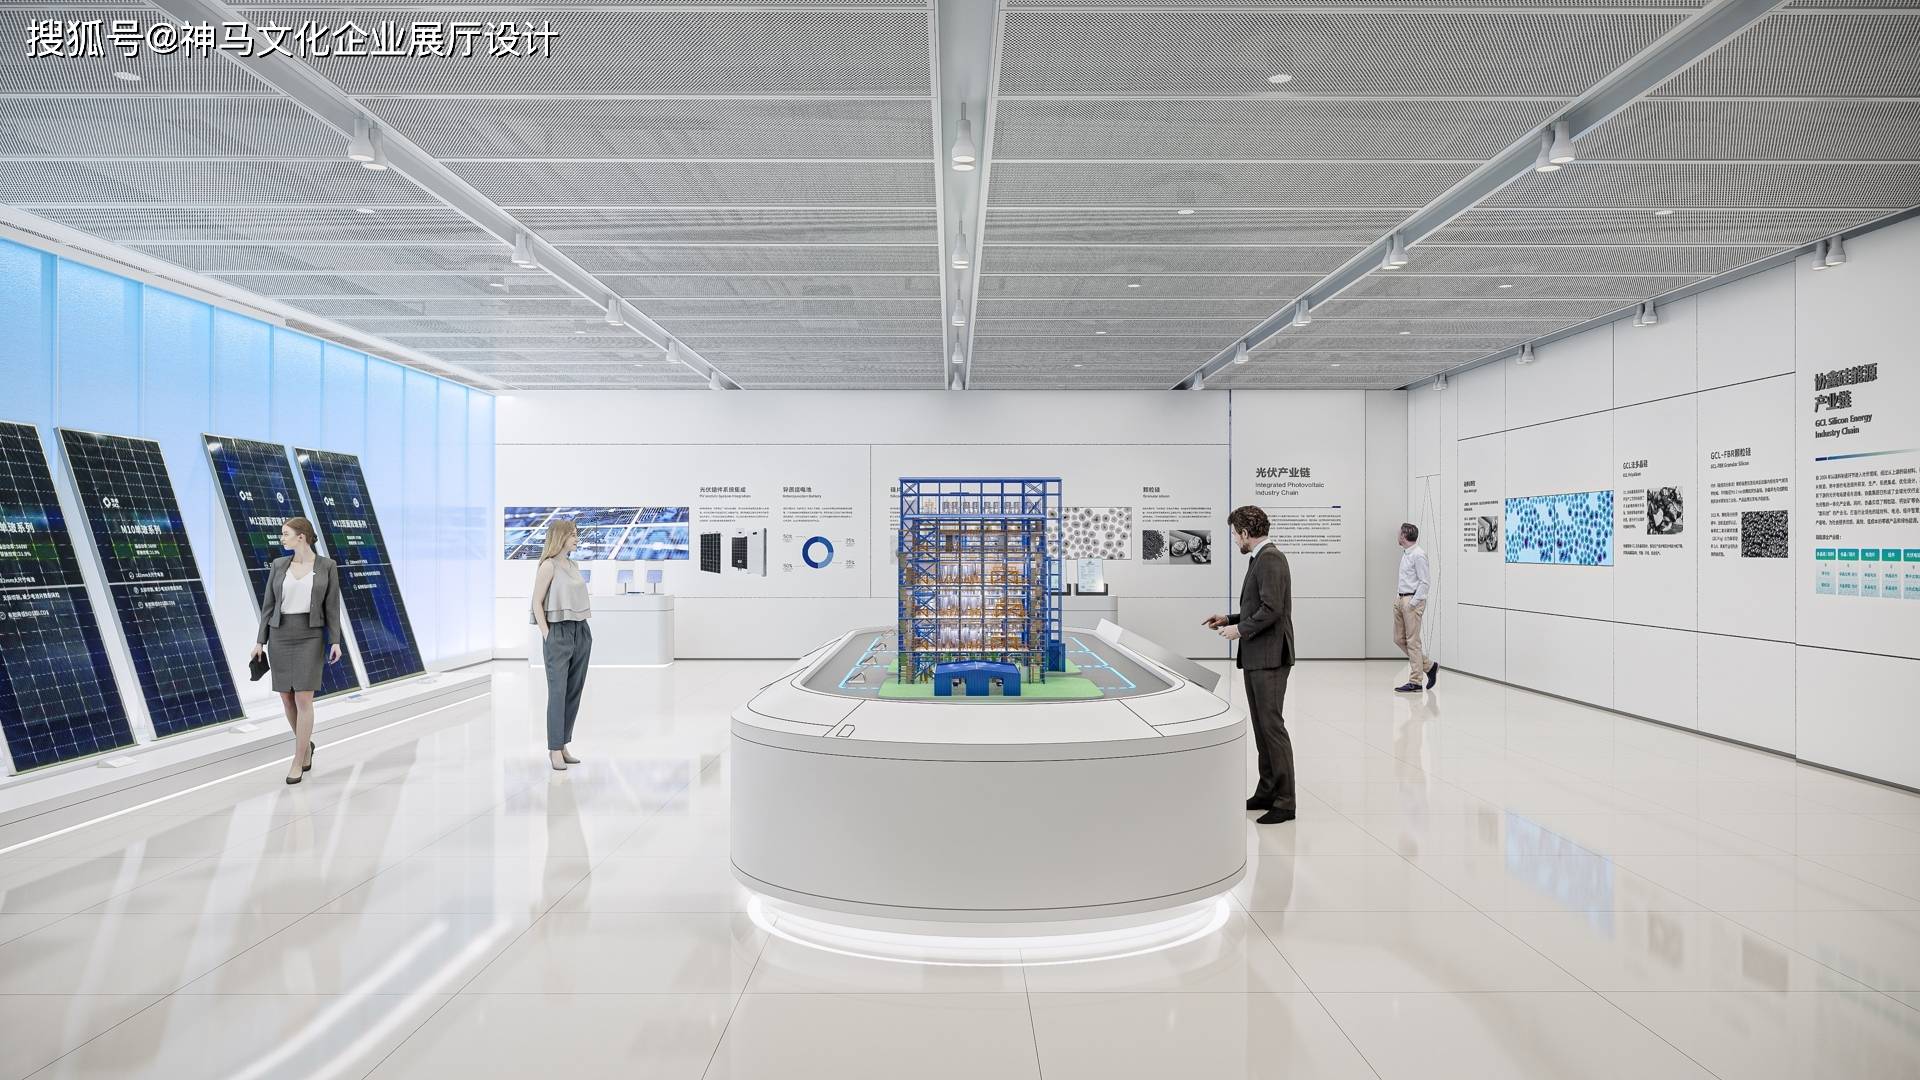 神马文化:新能源展厅设计创新和实用性相结合